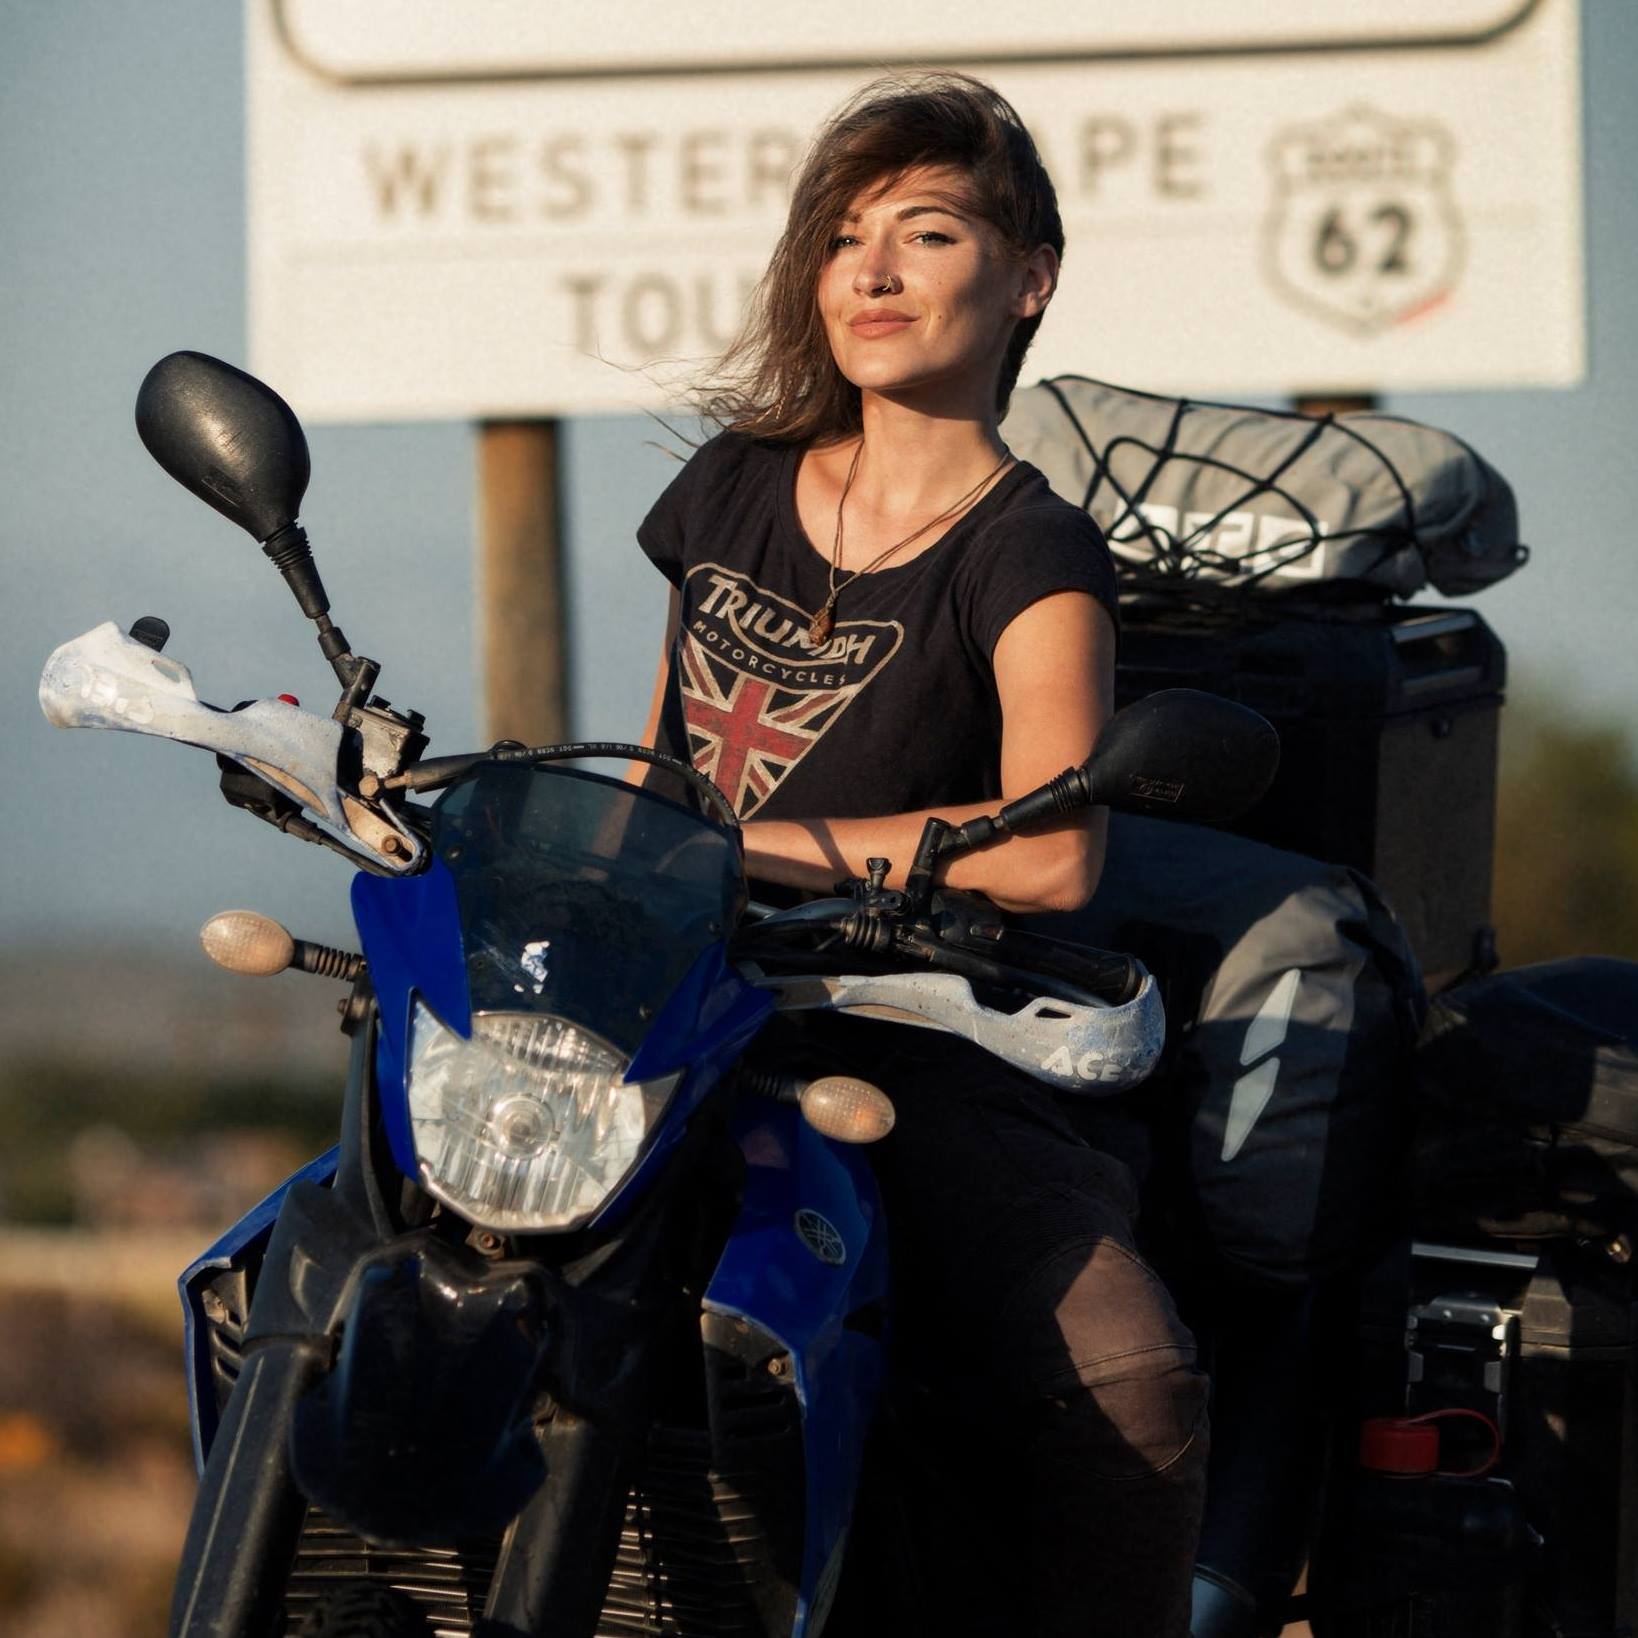 Episode 95 - Interview with Adventure Rider Rosie Gabrielle